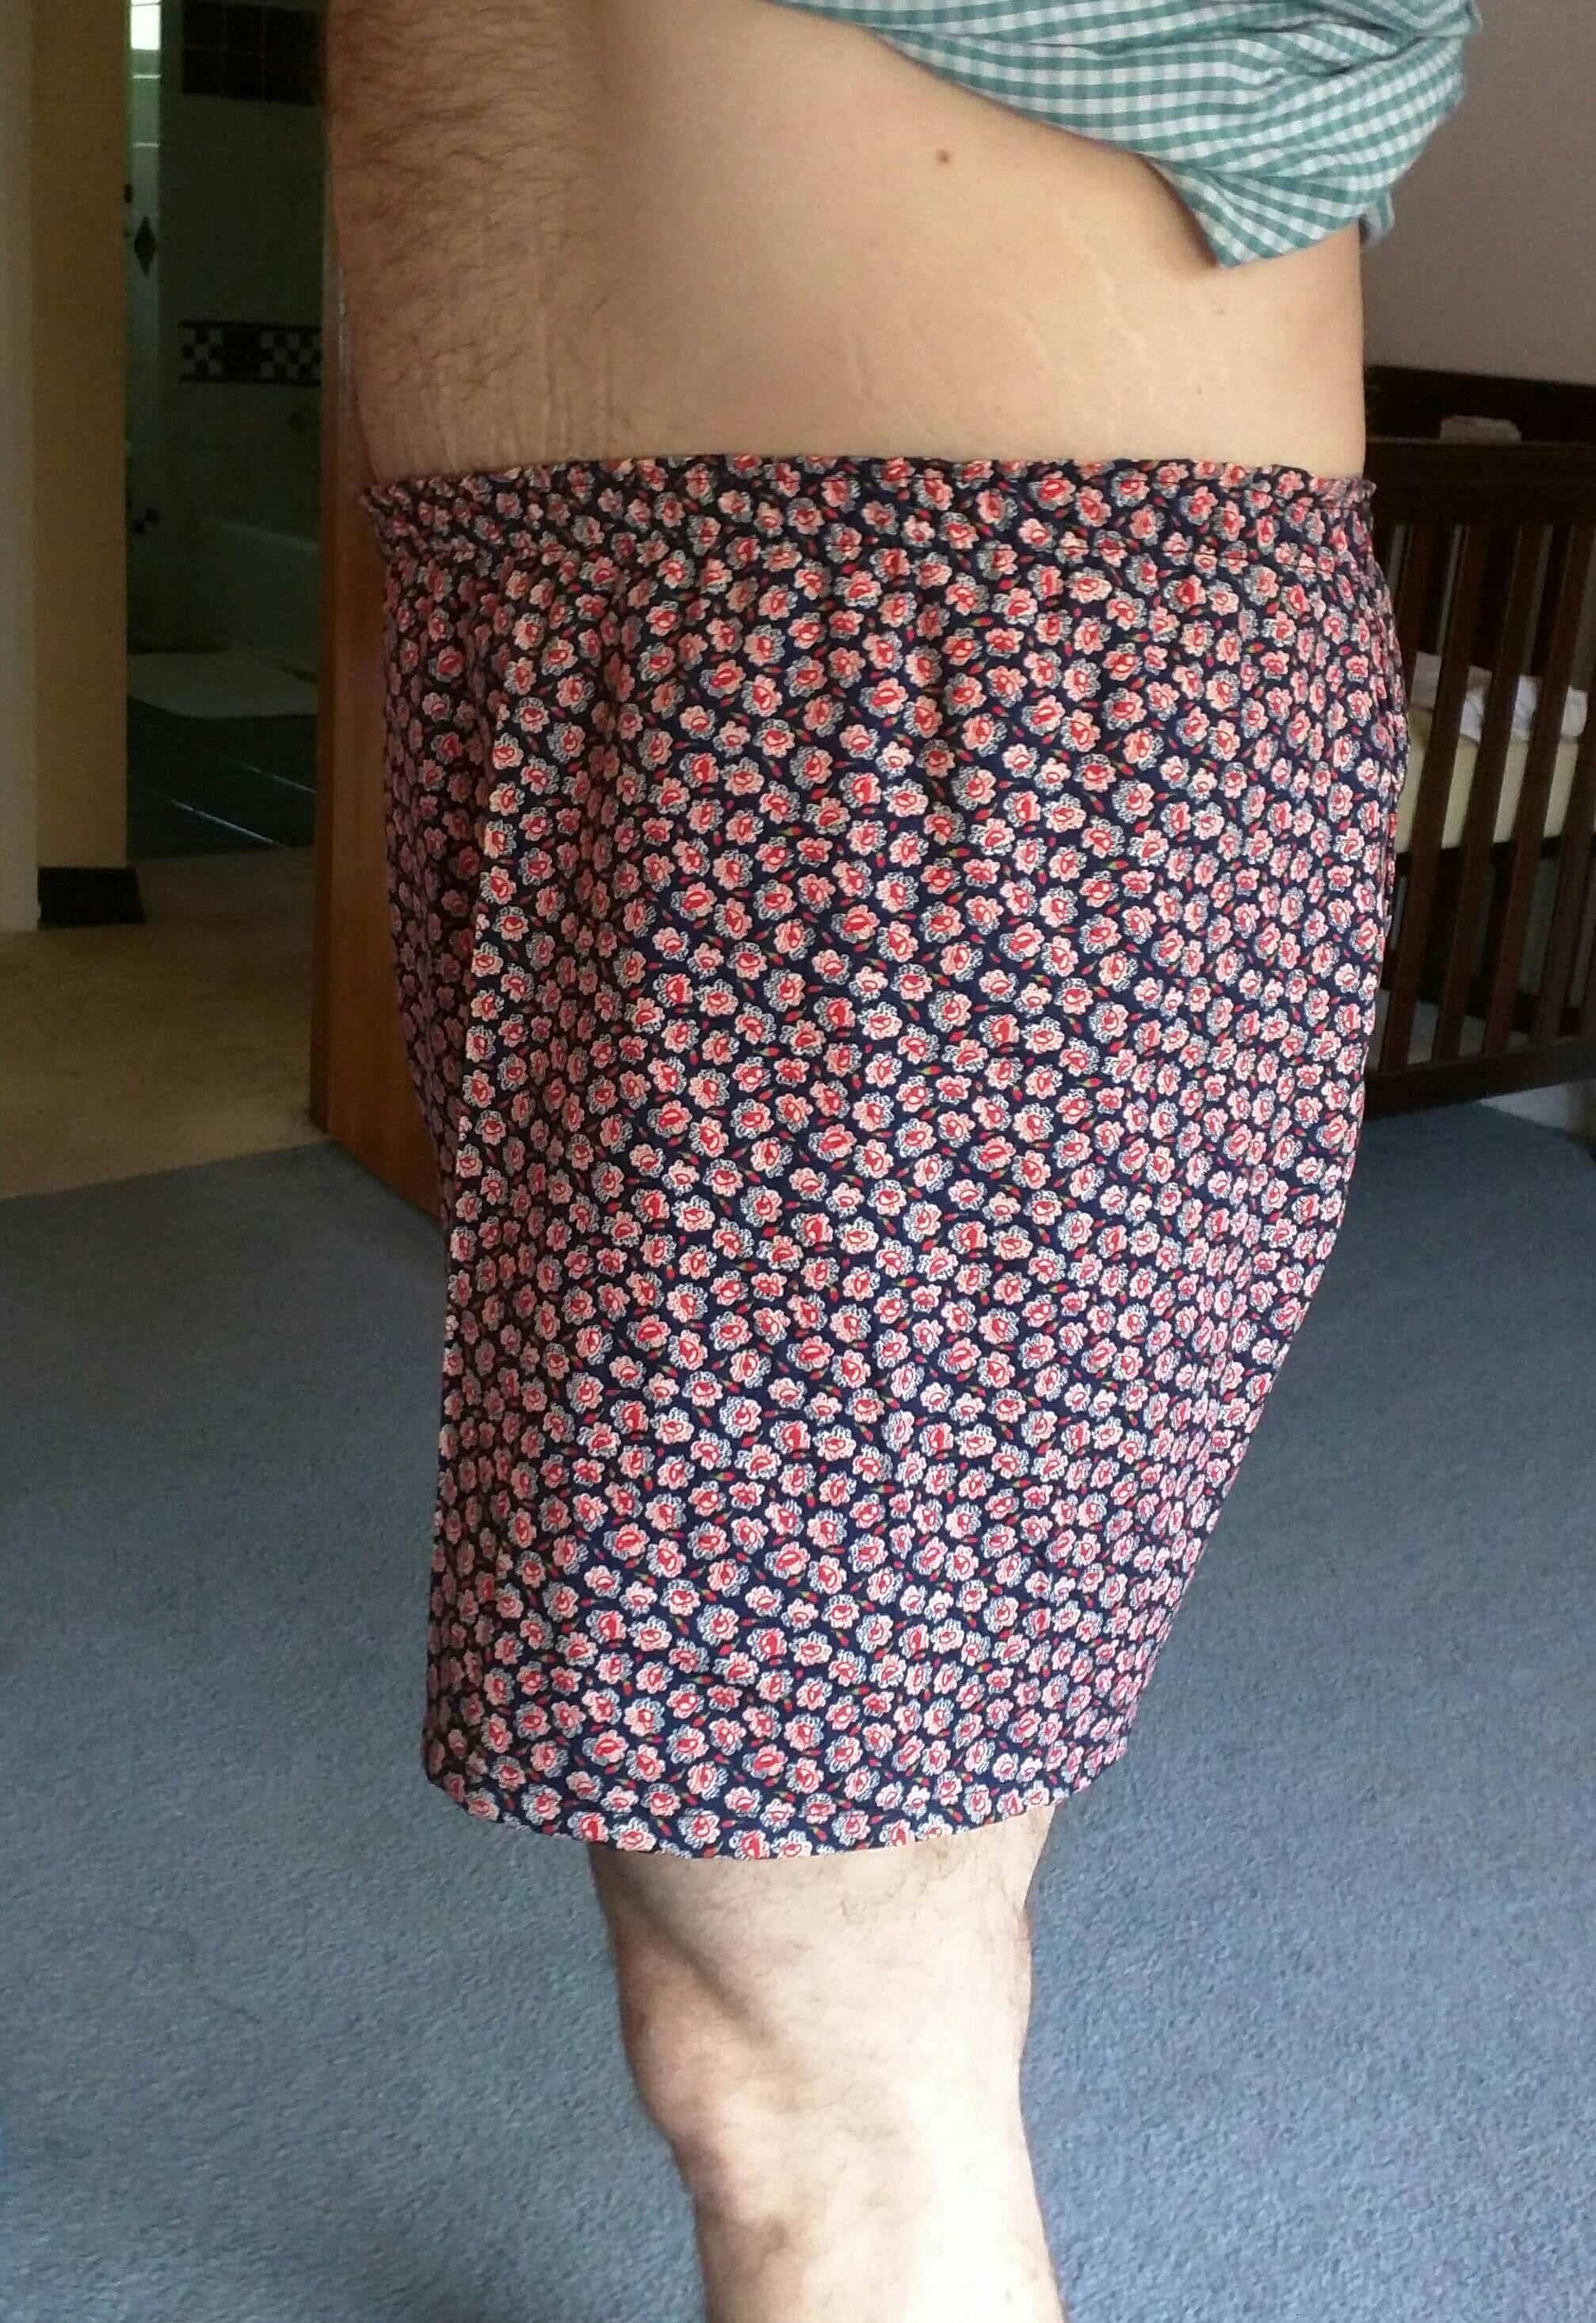 Boxer Shorts in colour velvet tendrils from the Fancy Woven